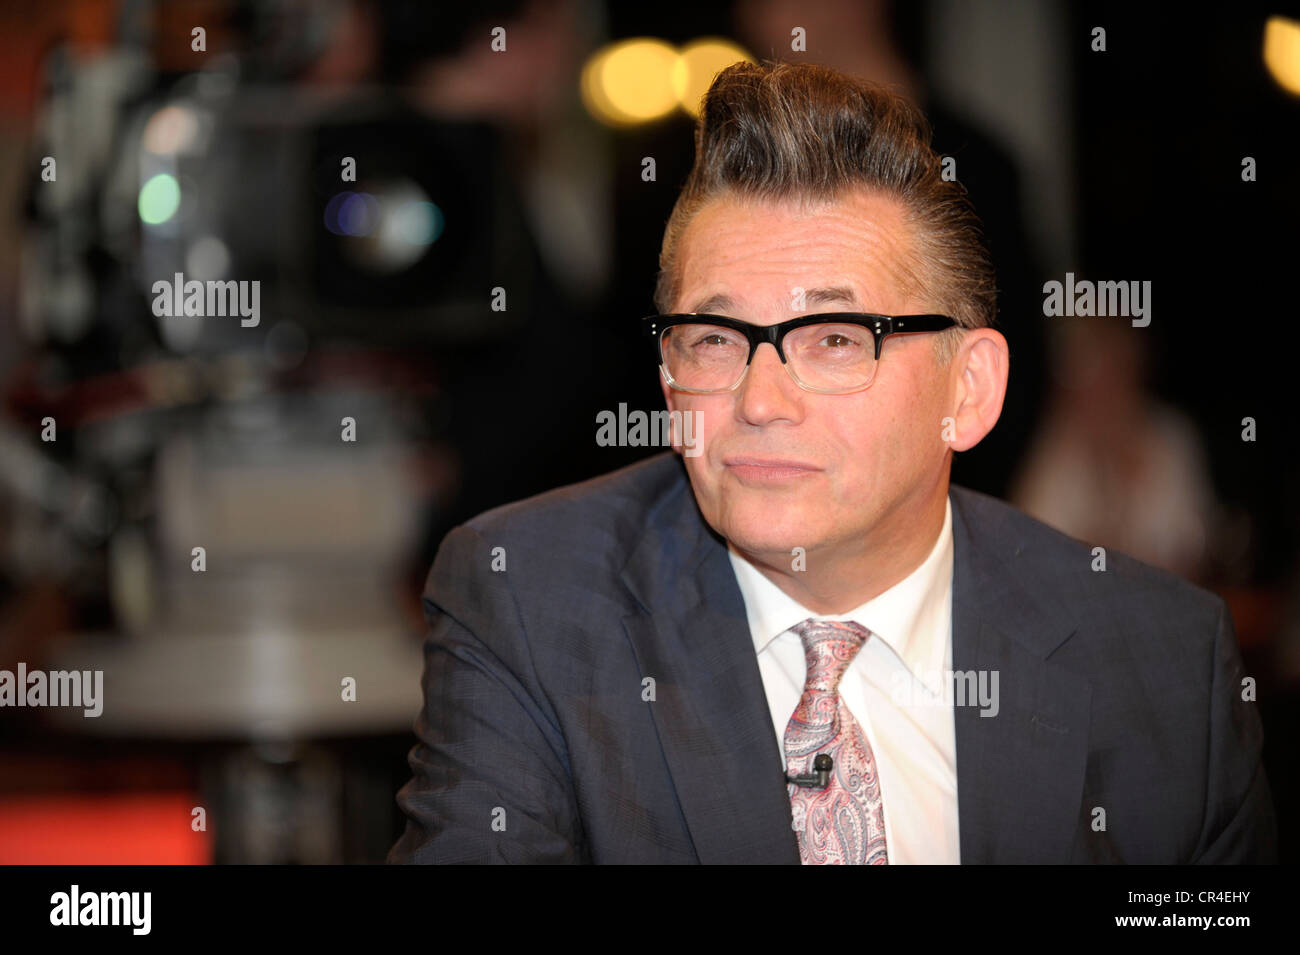 Goetz Alsmann, German television presenter, musician and singer, portrait Stock Photo